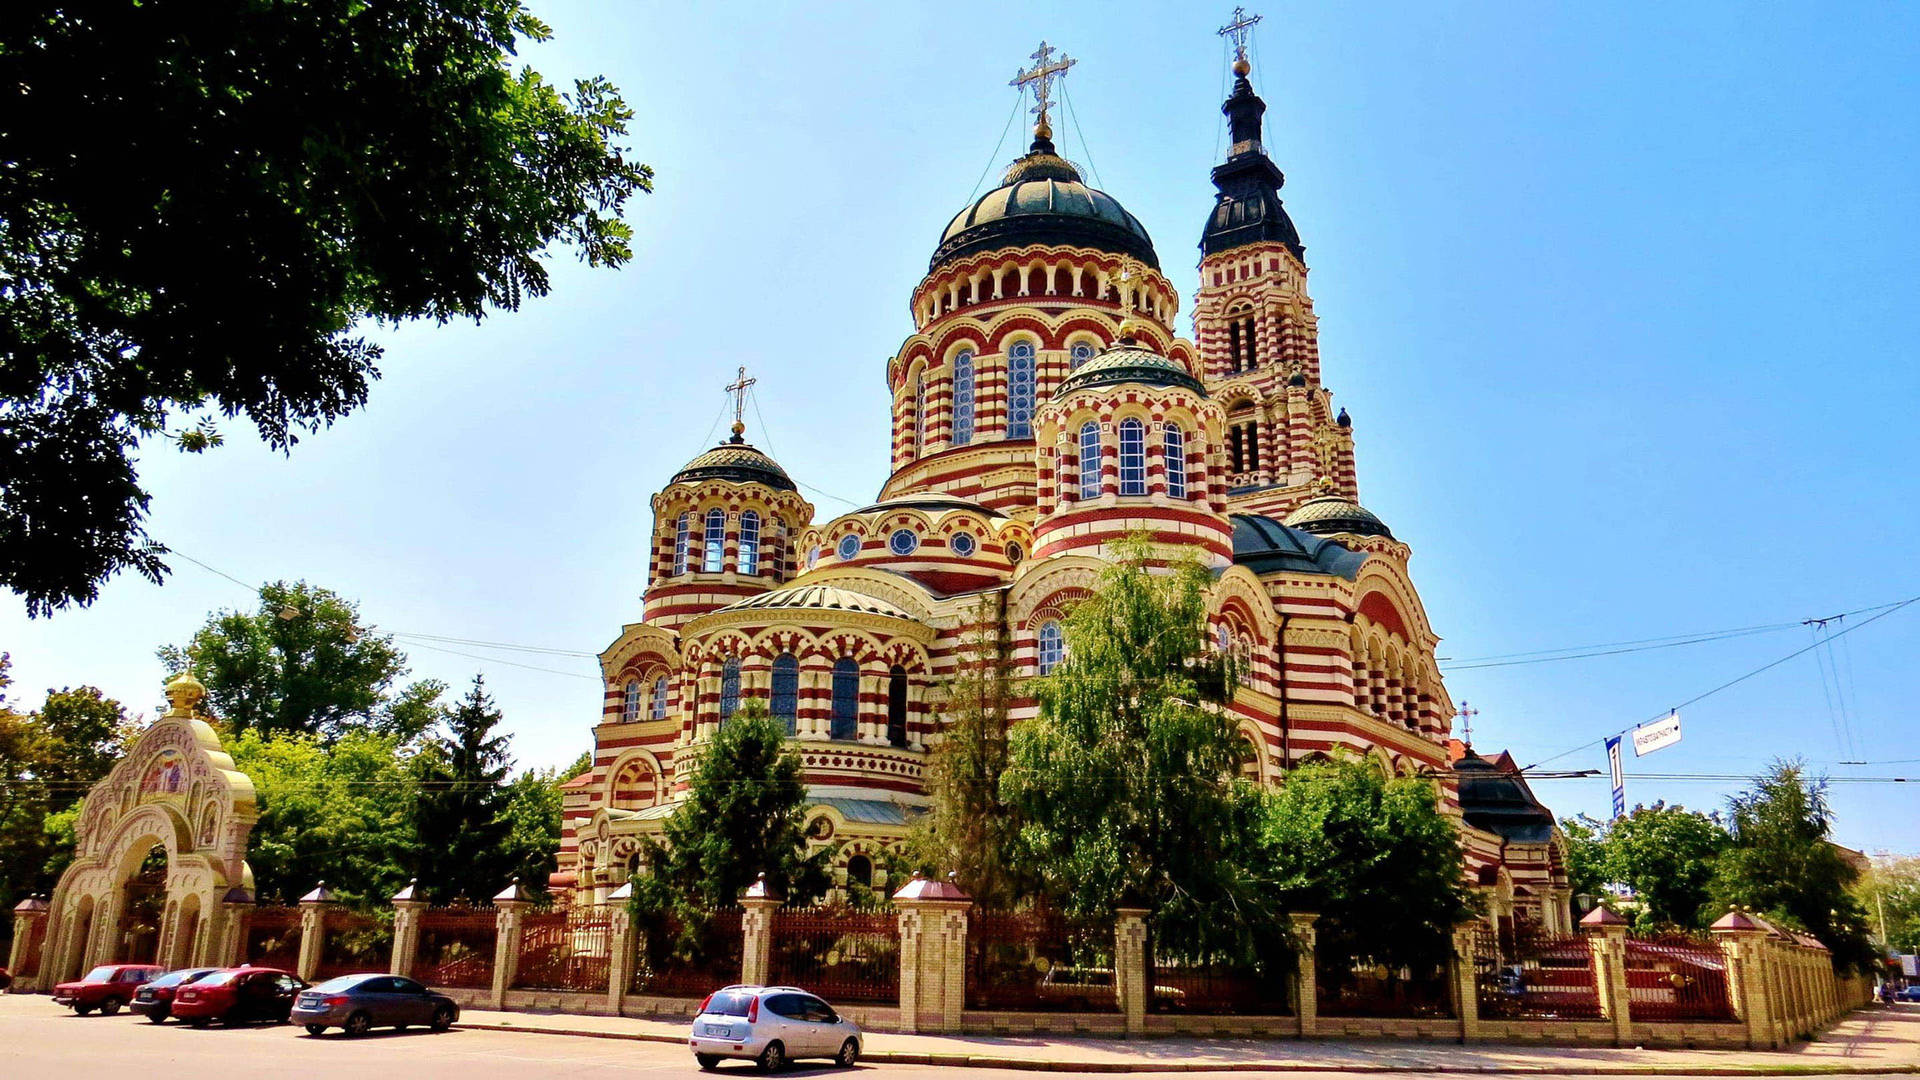 Ukraine Annunciation Cathedral